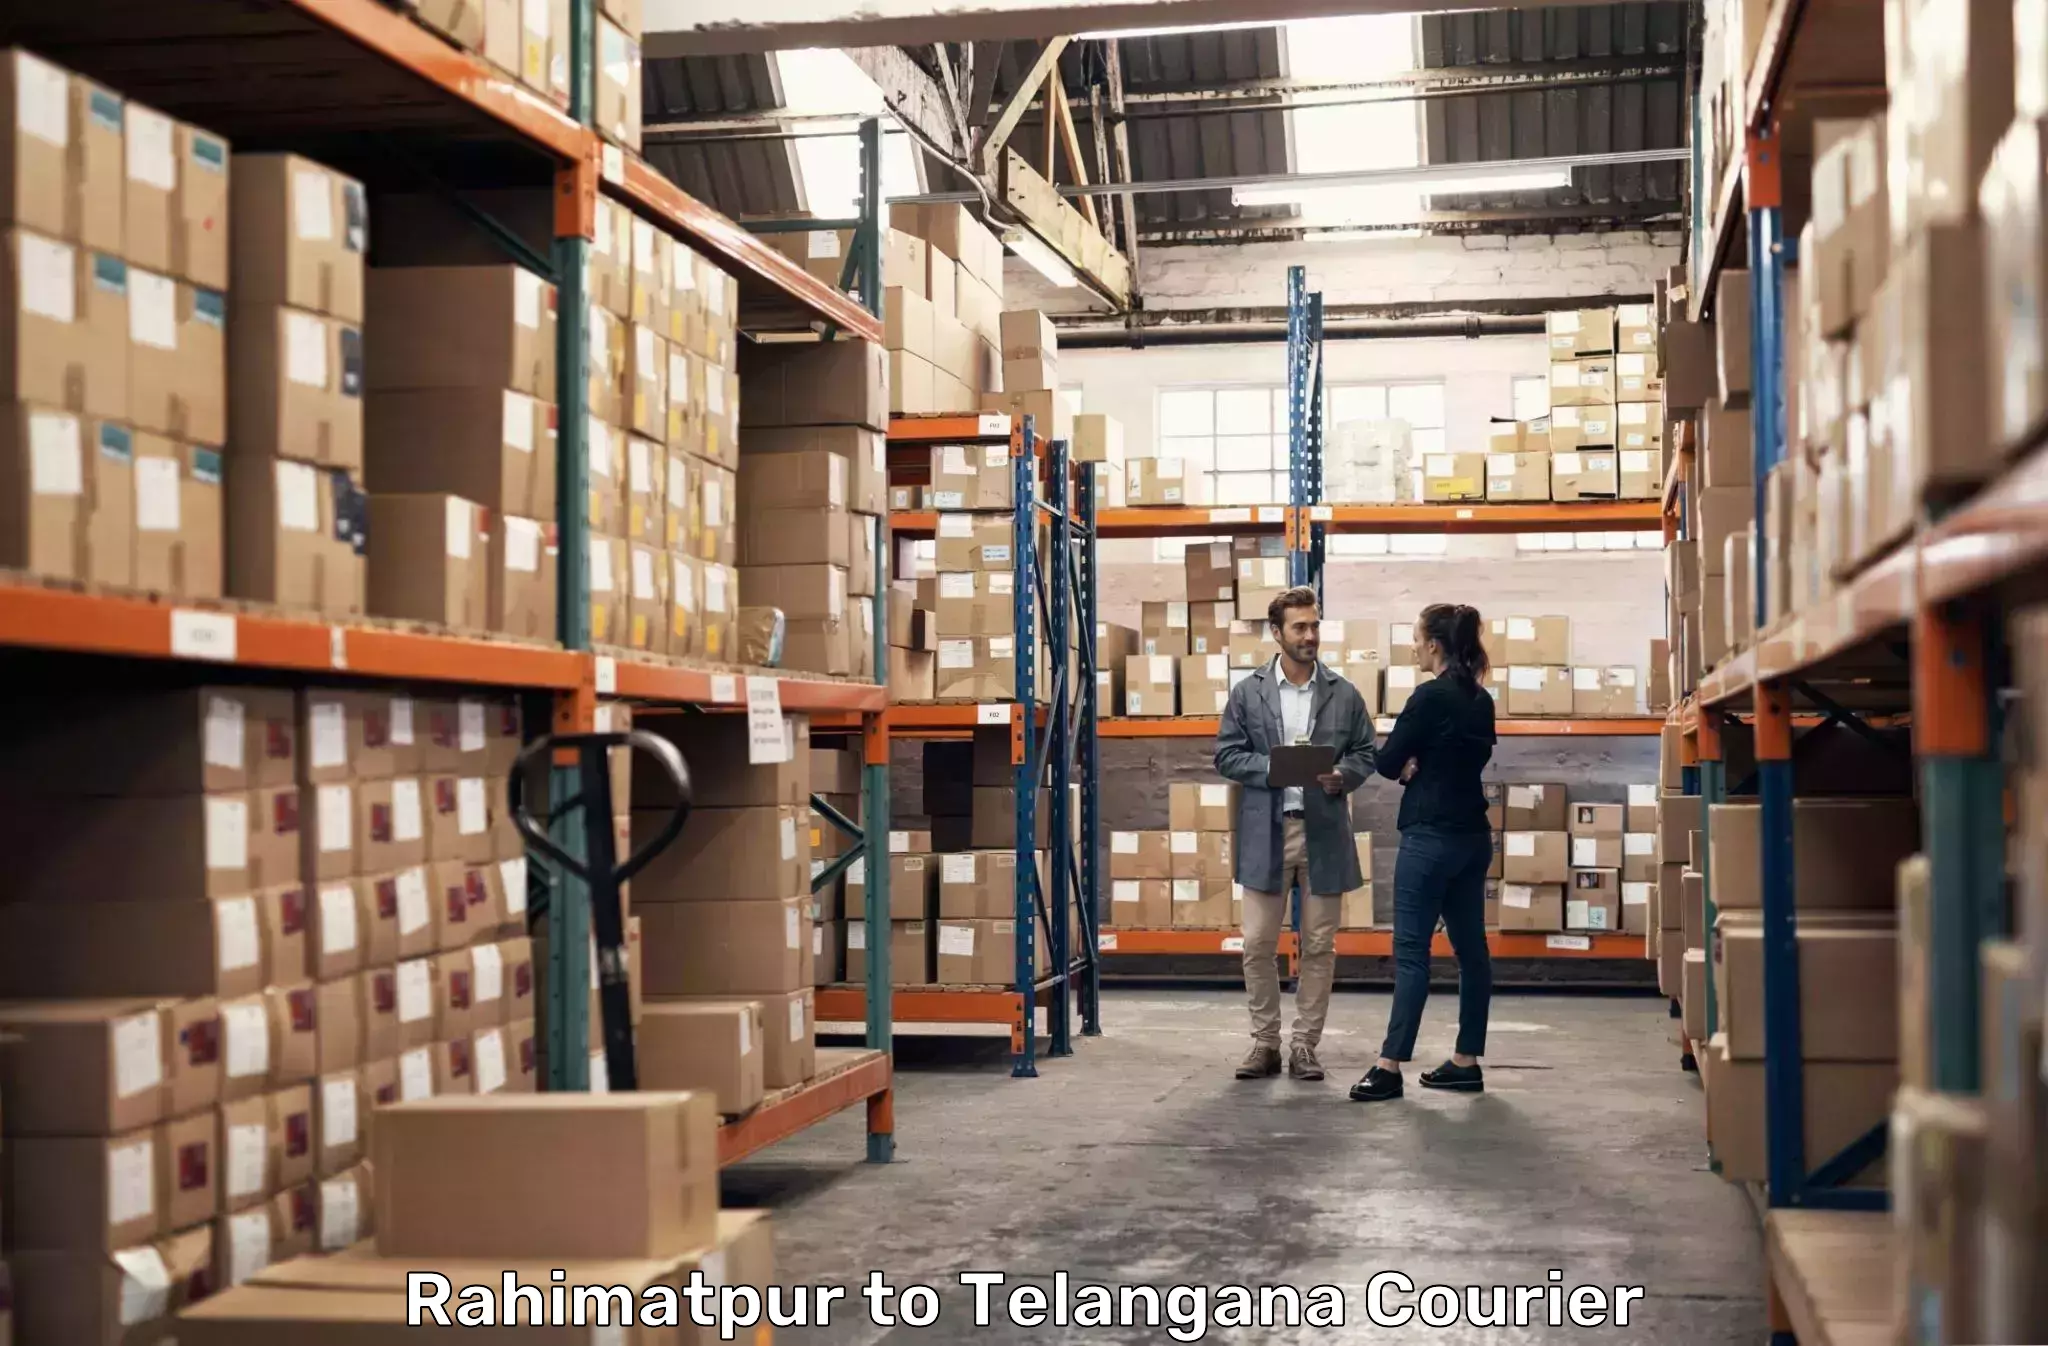 International courier rates Rahimatpur to Karimnagar